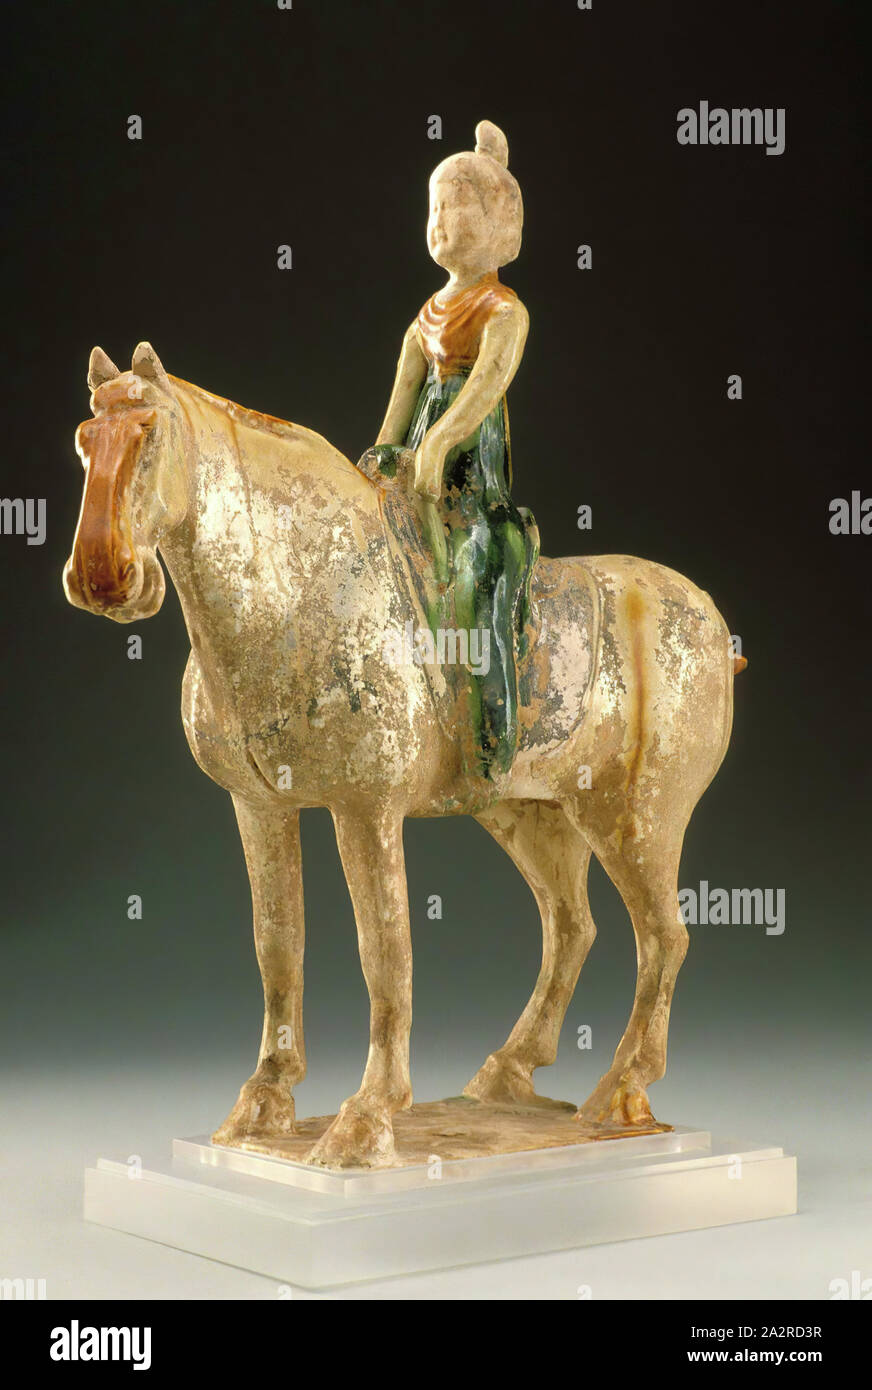 Unbekannt (Chinesisch), Pferd und Reiter, aus dem 8. Jahrhundert, glasierte Irdenware, Höhe, exklusive Stand: 16 1/2 in. Stockfoto